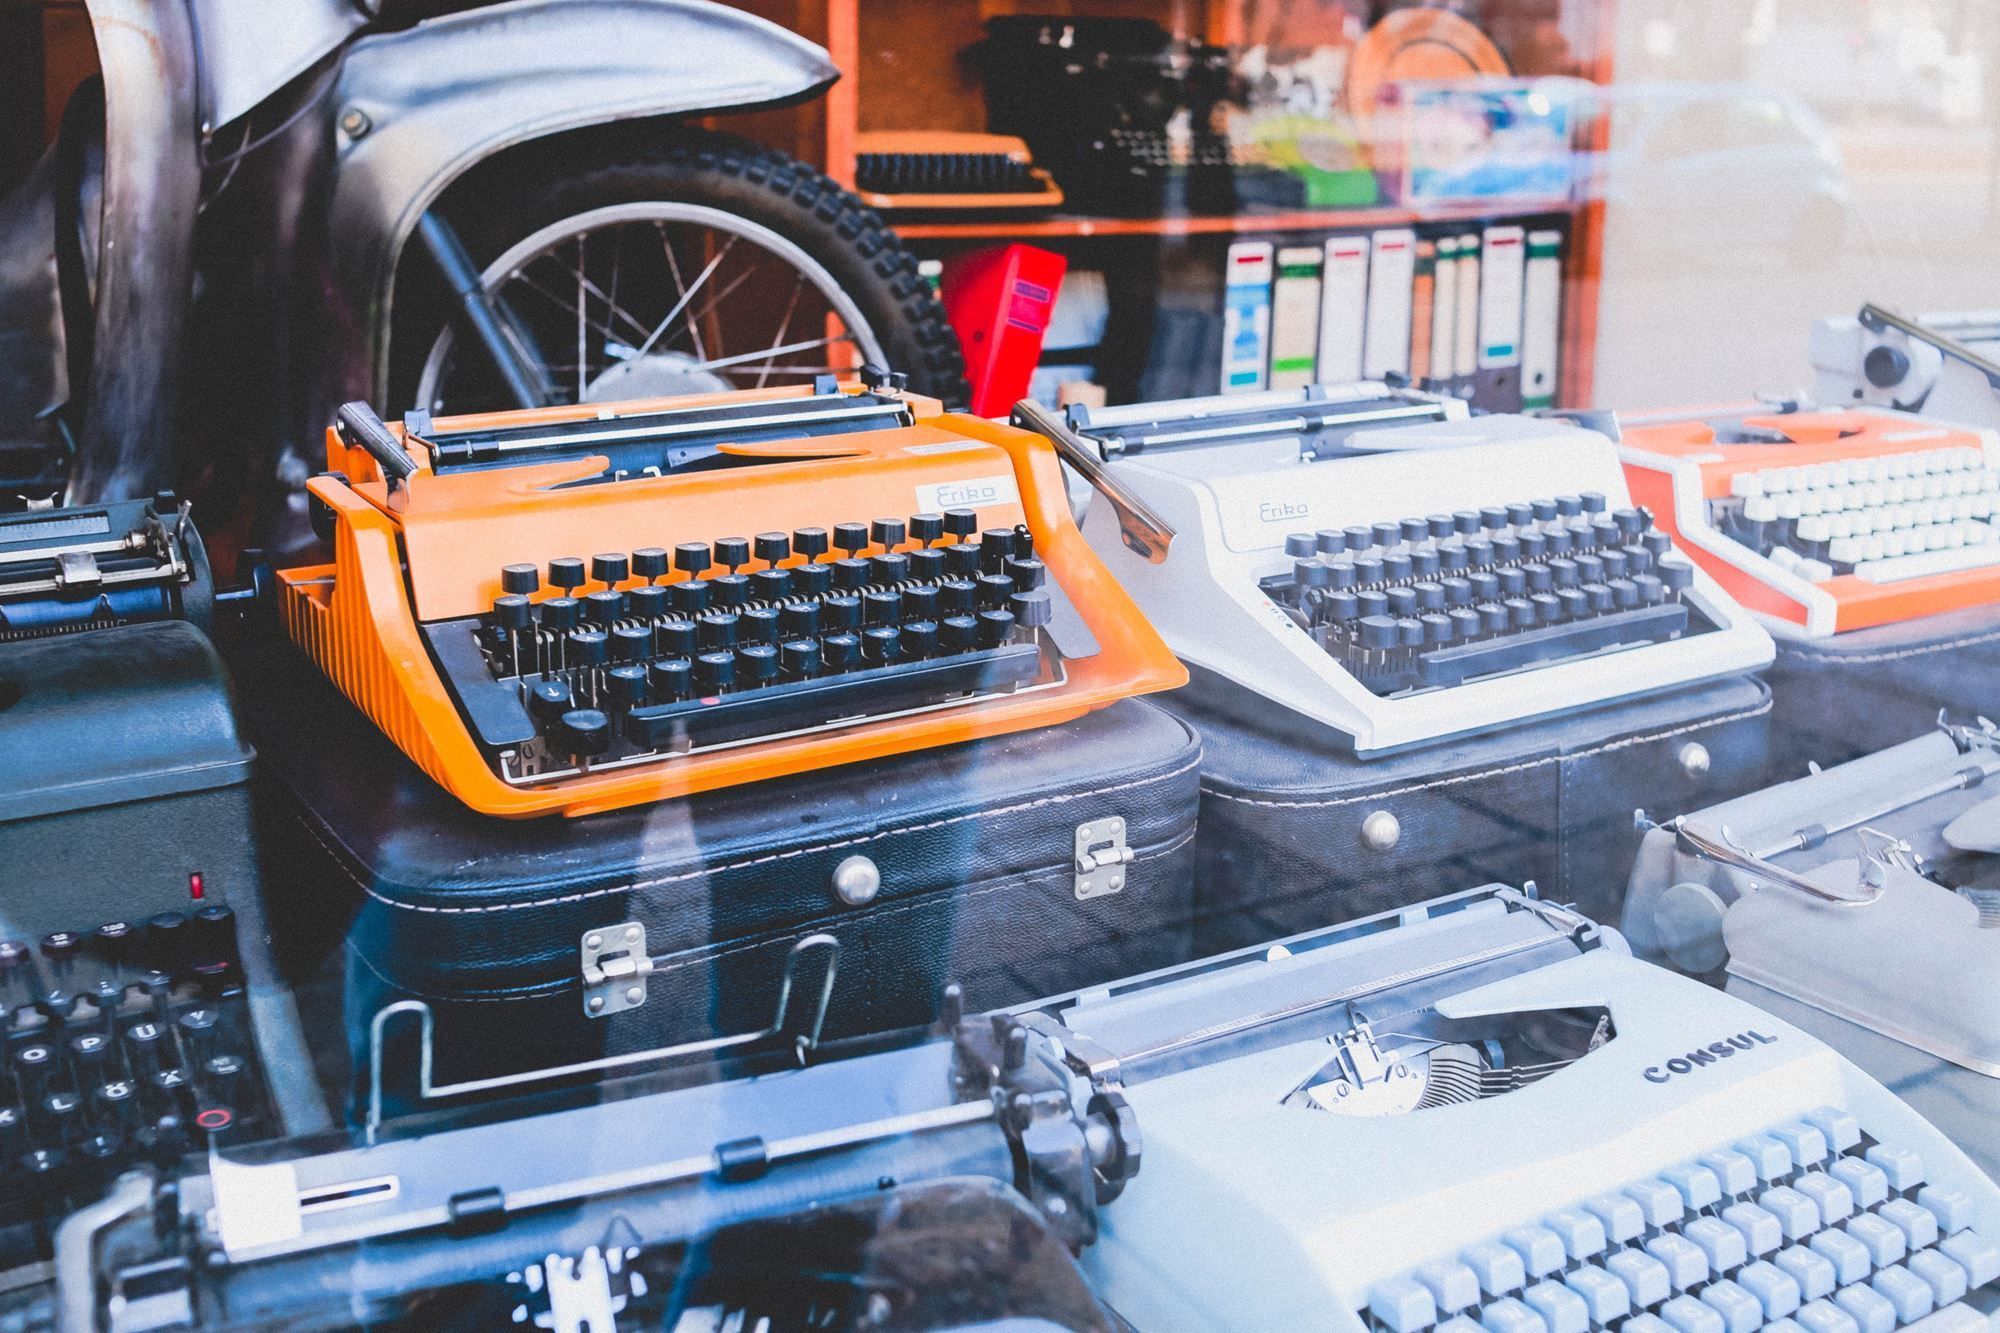 An orange typewriter sitting next to other old typewriters behind glass